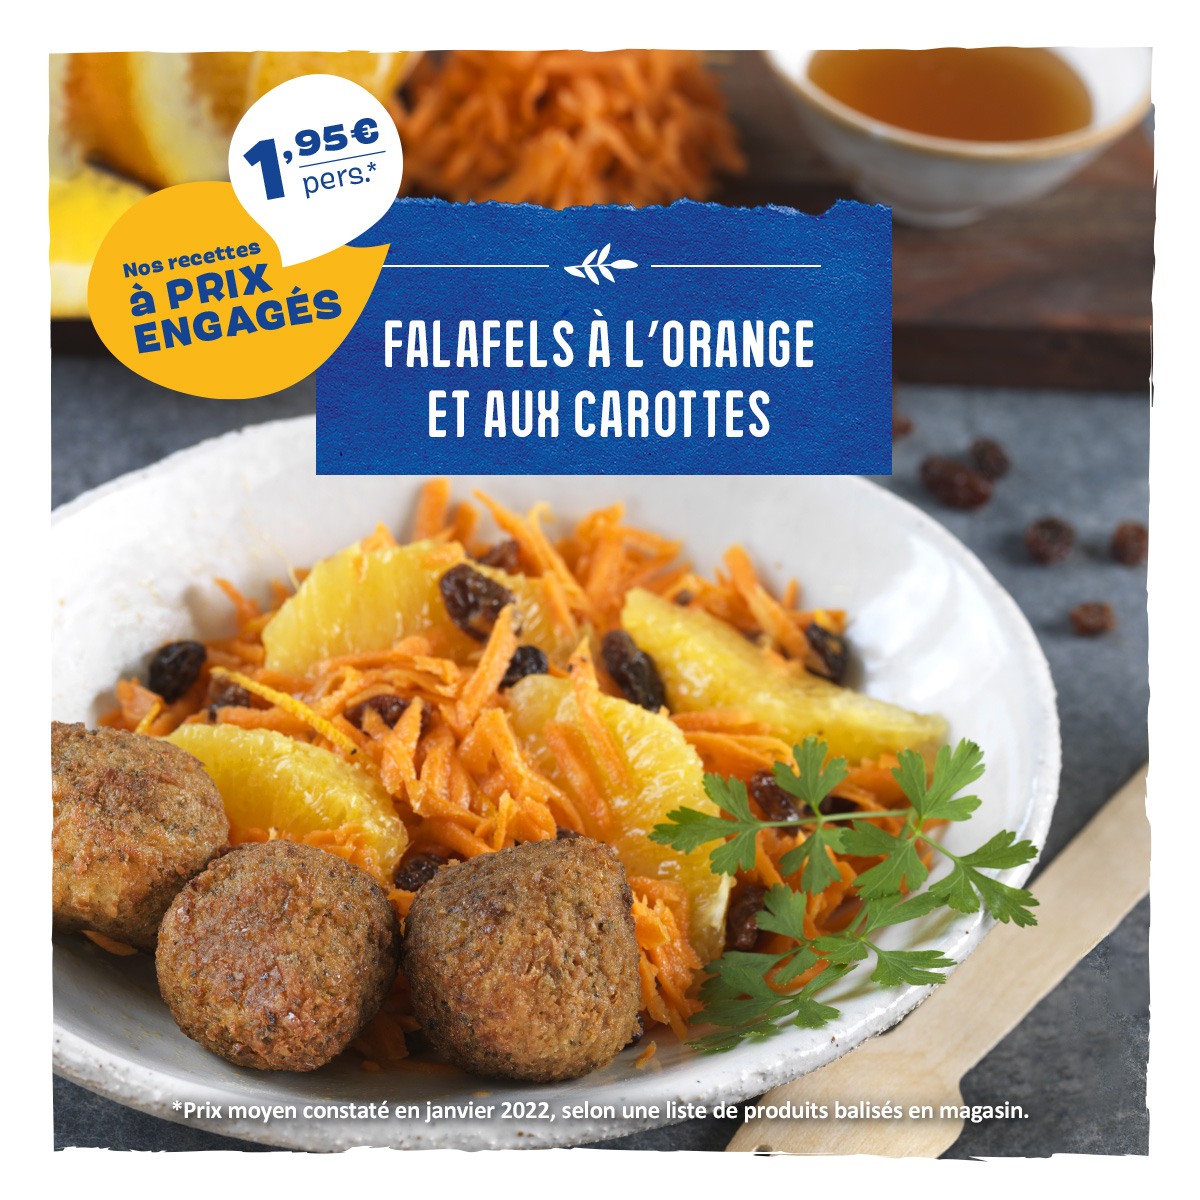 Falafels à l’orange et aux carottes (1,95€/personne)  